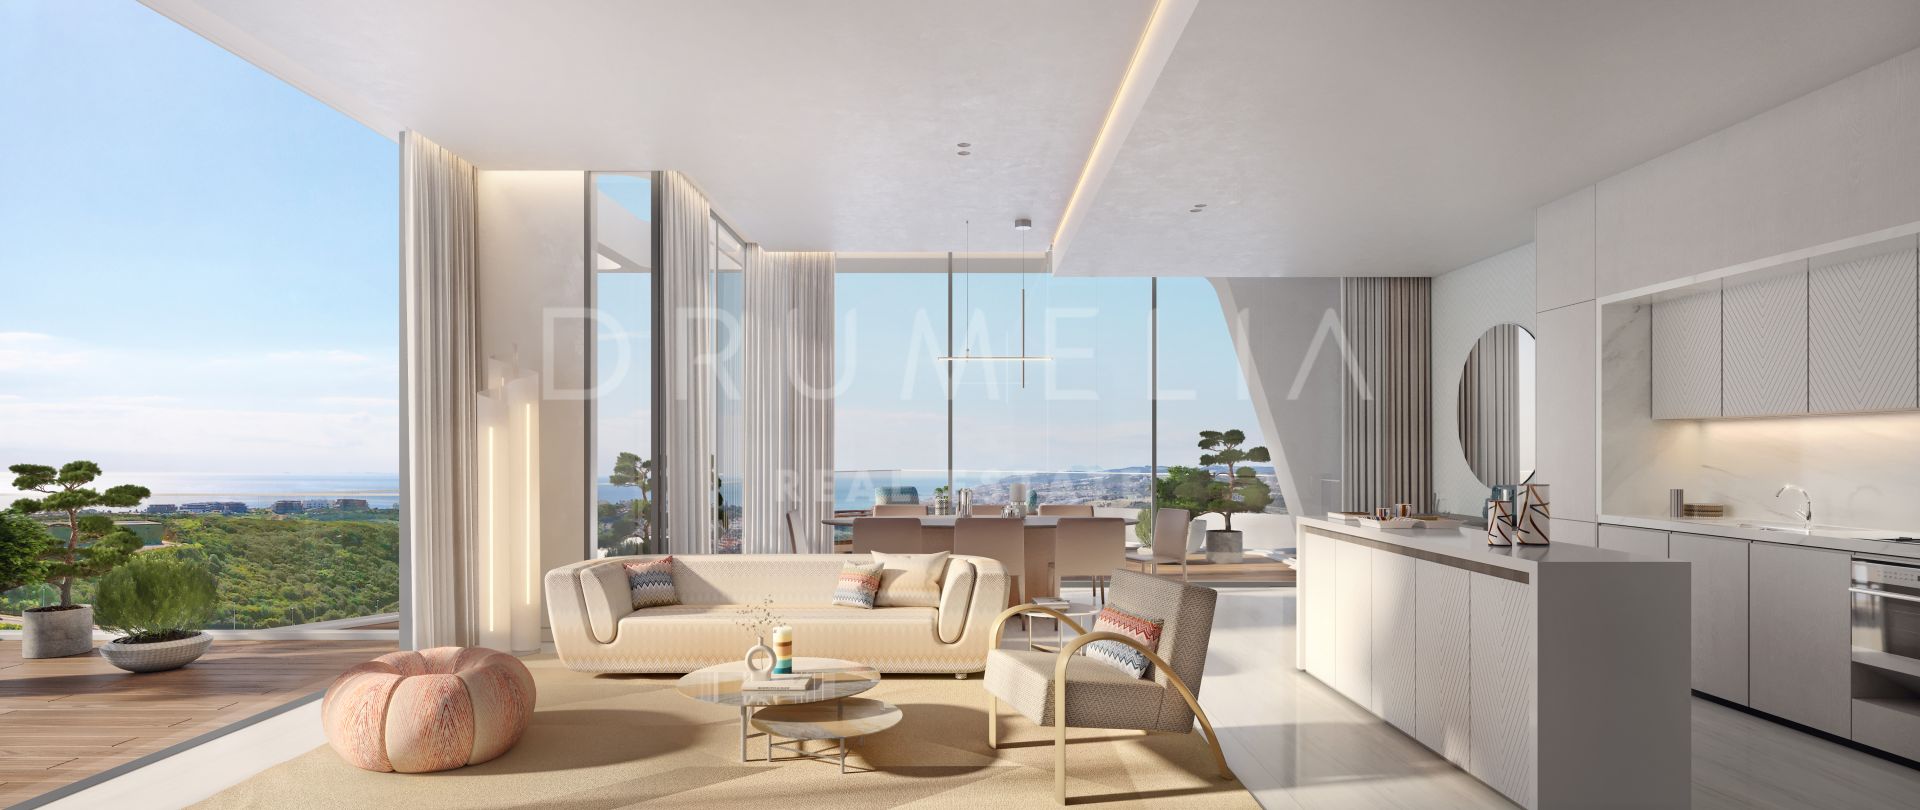 Buitengewoon gloednieuw modern luxe designer appartement met uitzicht op zee in Finca Cortesin, Casares